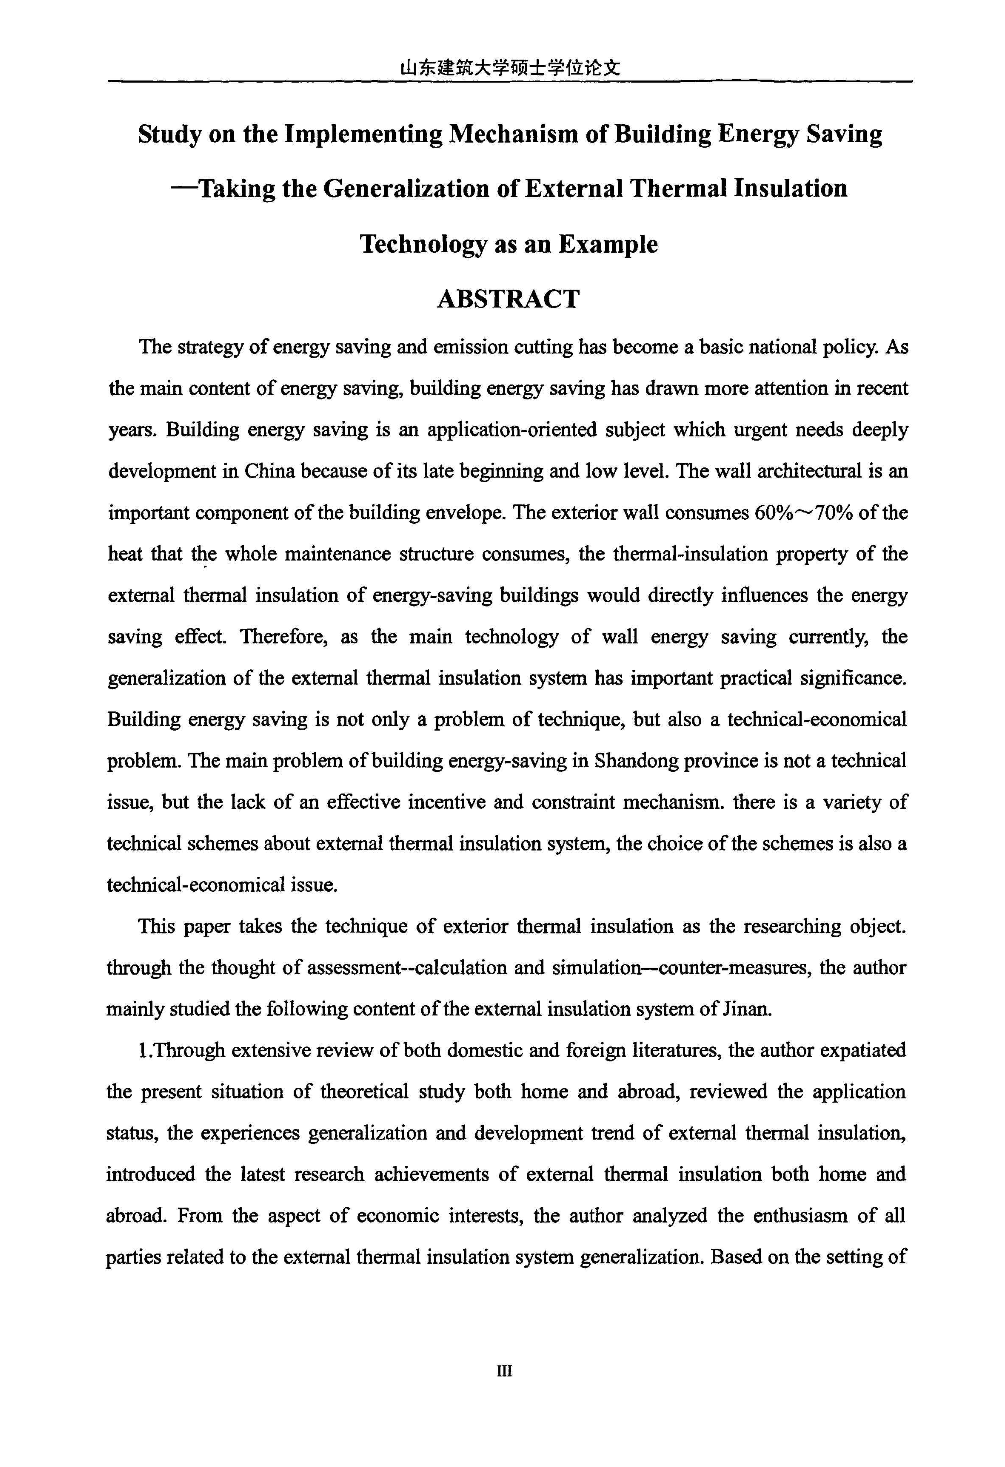 建筑节能实施机制研究——以外墙外保温技术推广为例-图二